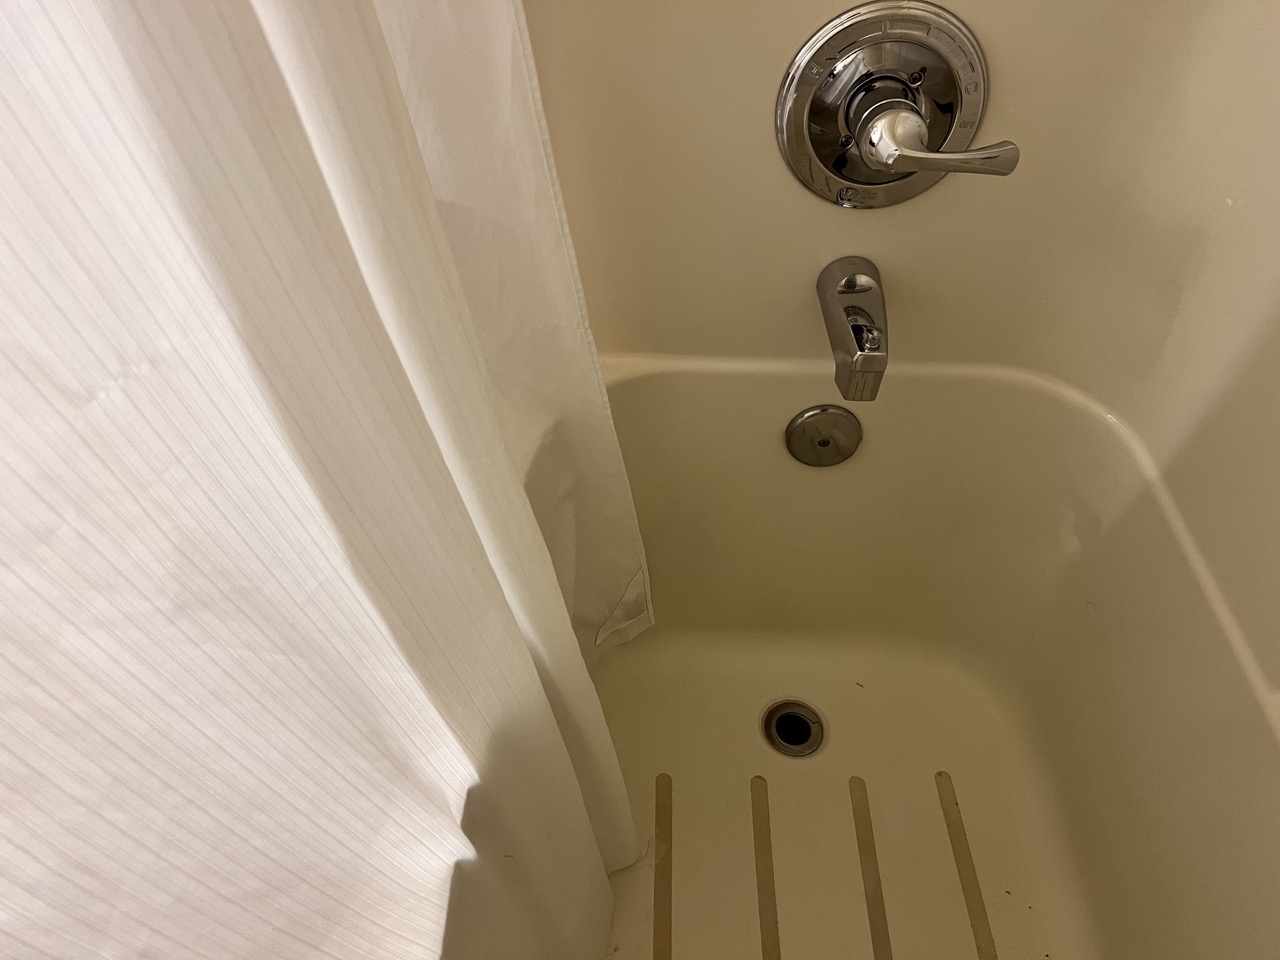 이런식으로 커튼을 안쪽에 두고 샤워해야 물 튐을 방지할 수 있다.